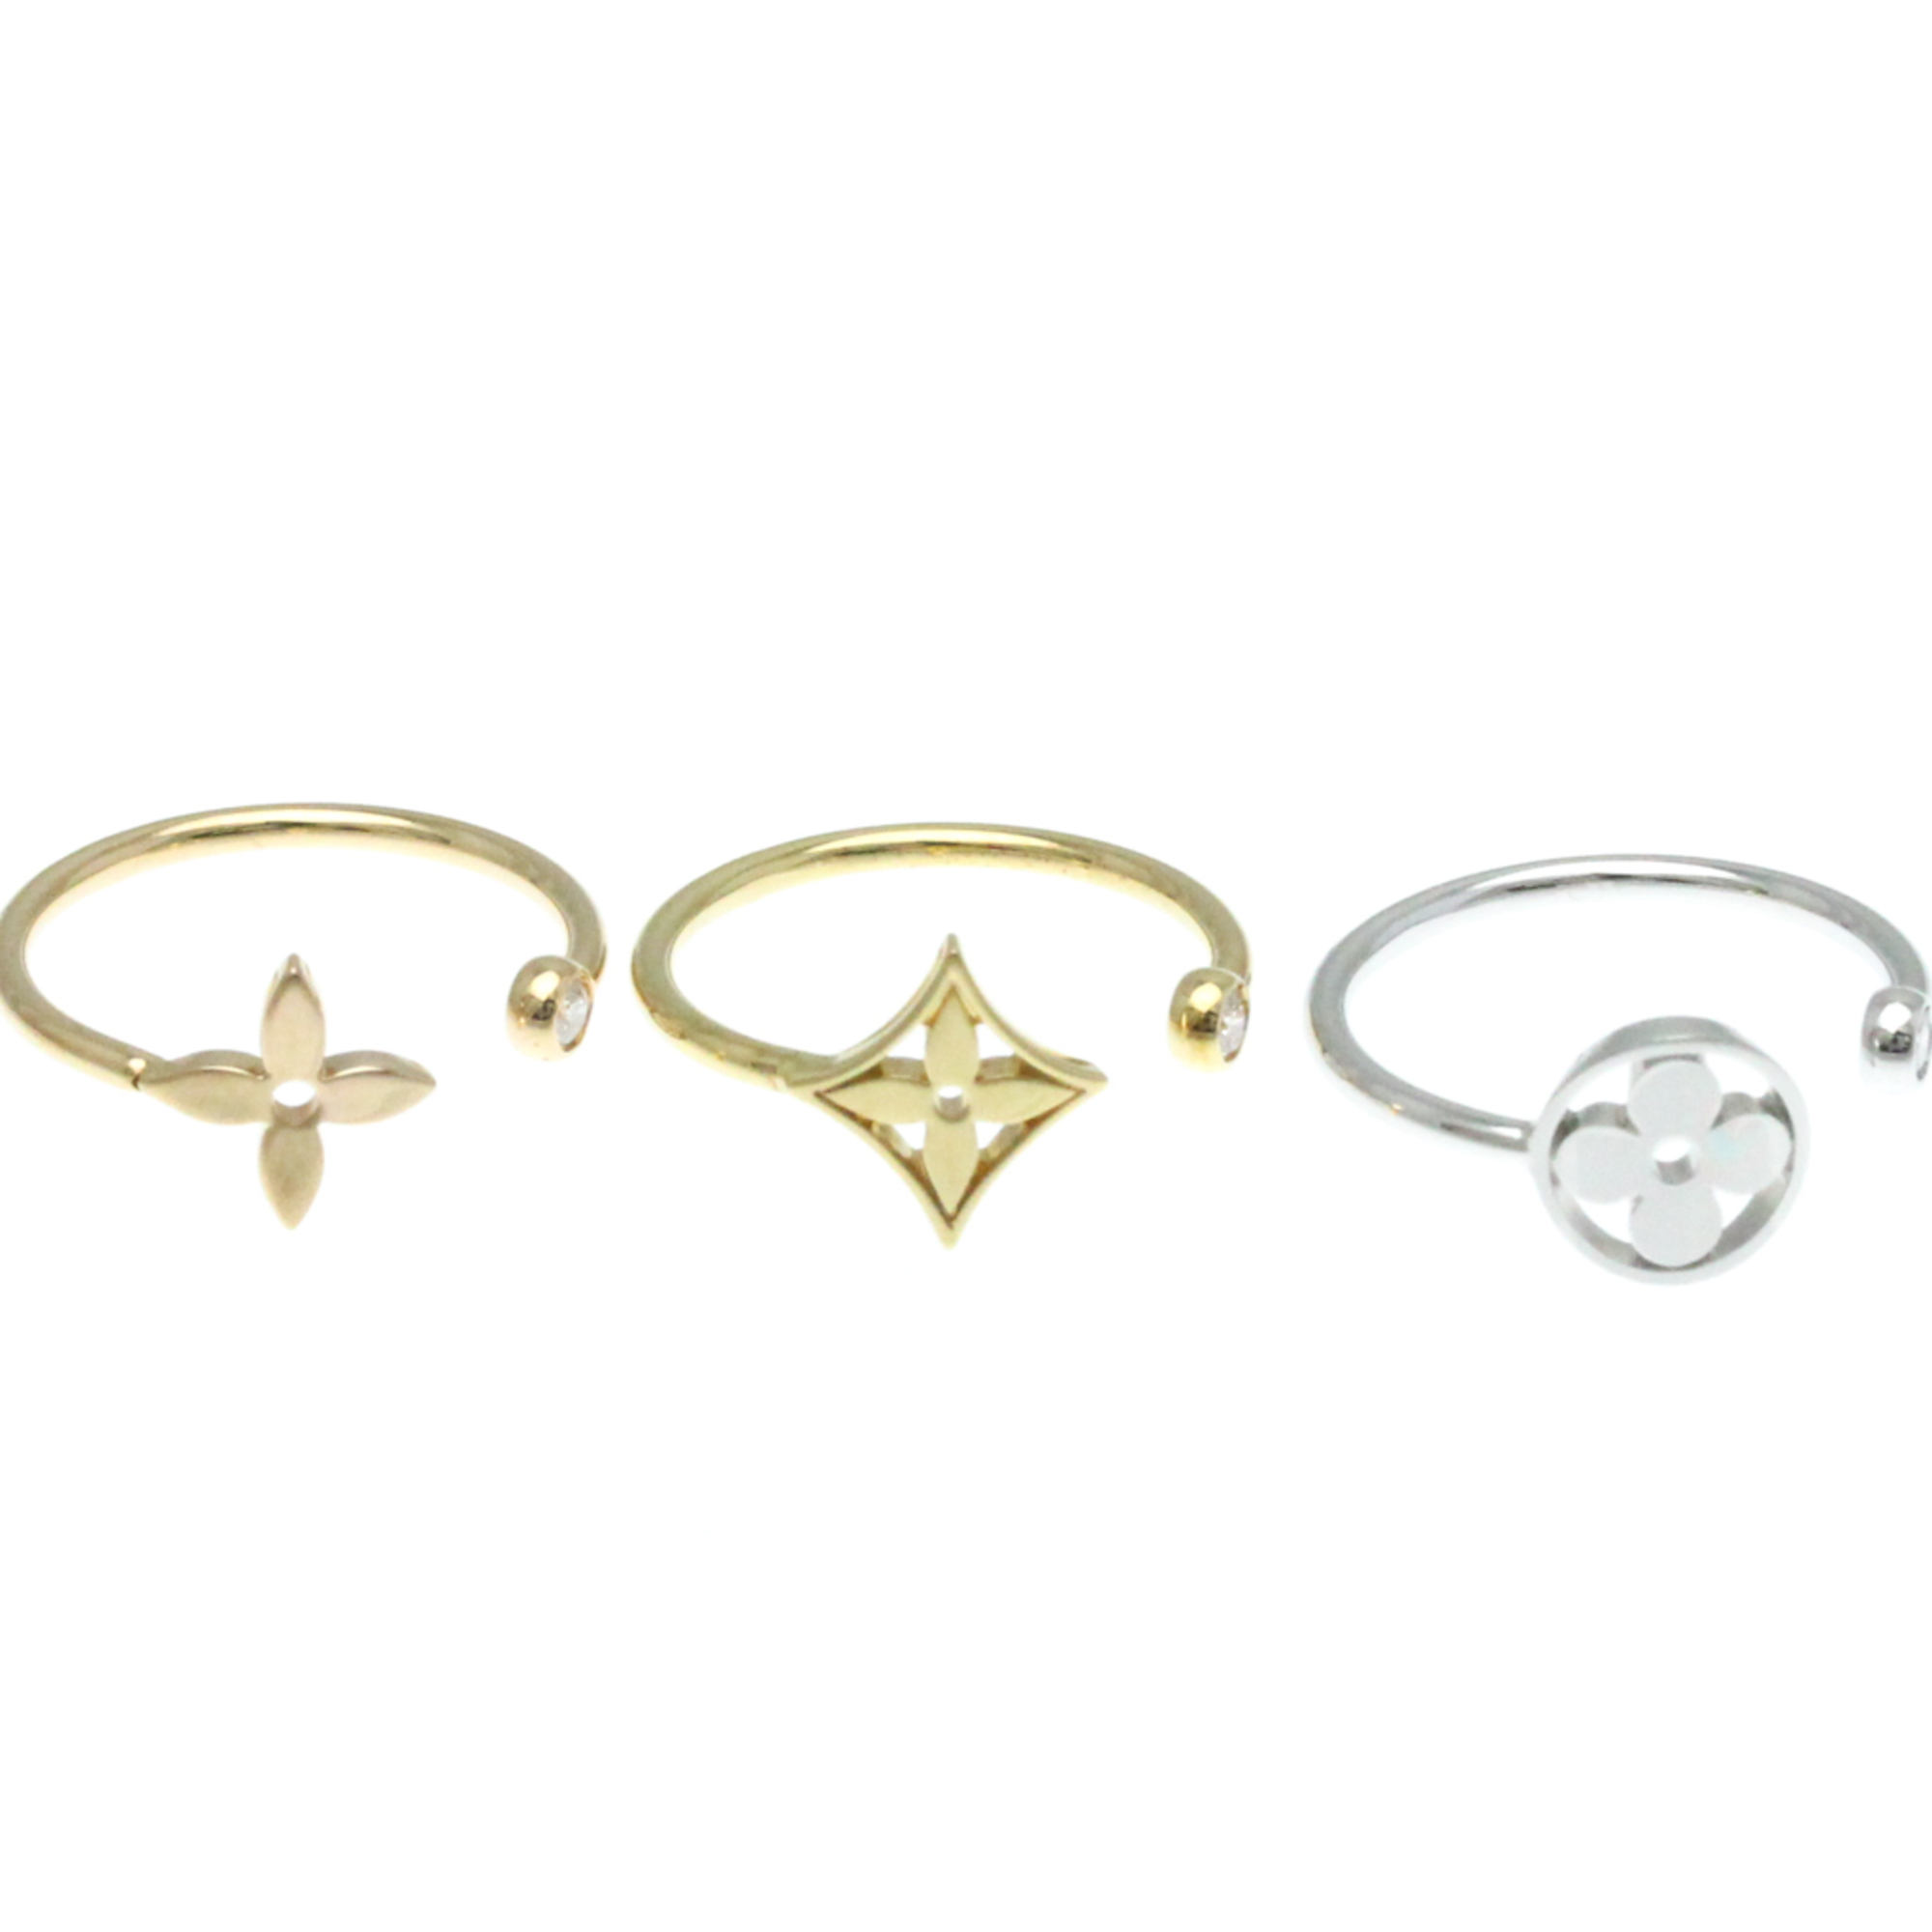 Louis Vuitton Berg Monogram Idylle Ring Q9F15G Pink Gold (18K),White Gold (18K),Yellow Gold (18K) Fashion Diamond Band Ring Gold